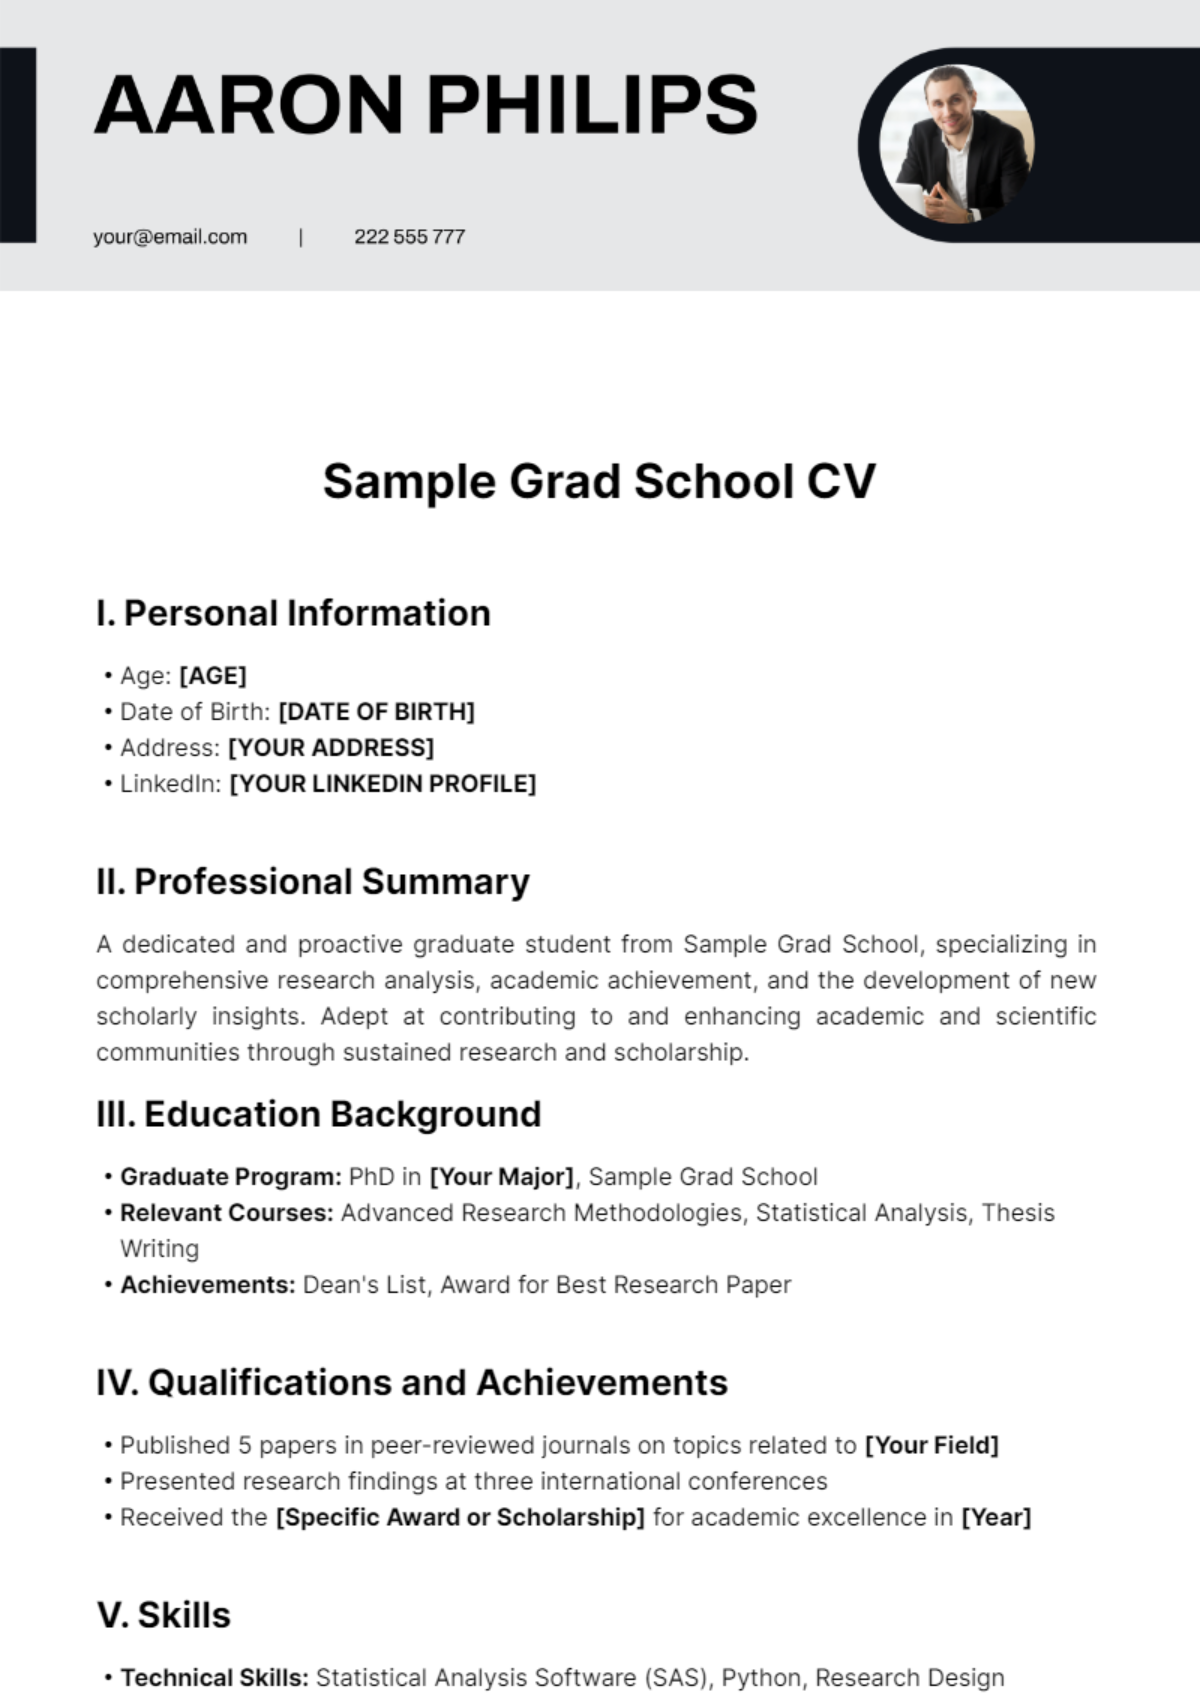 Sample Grad School CV Template